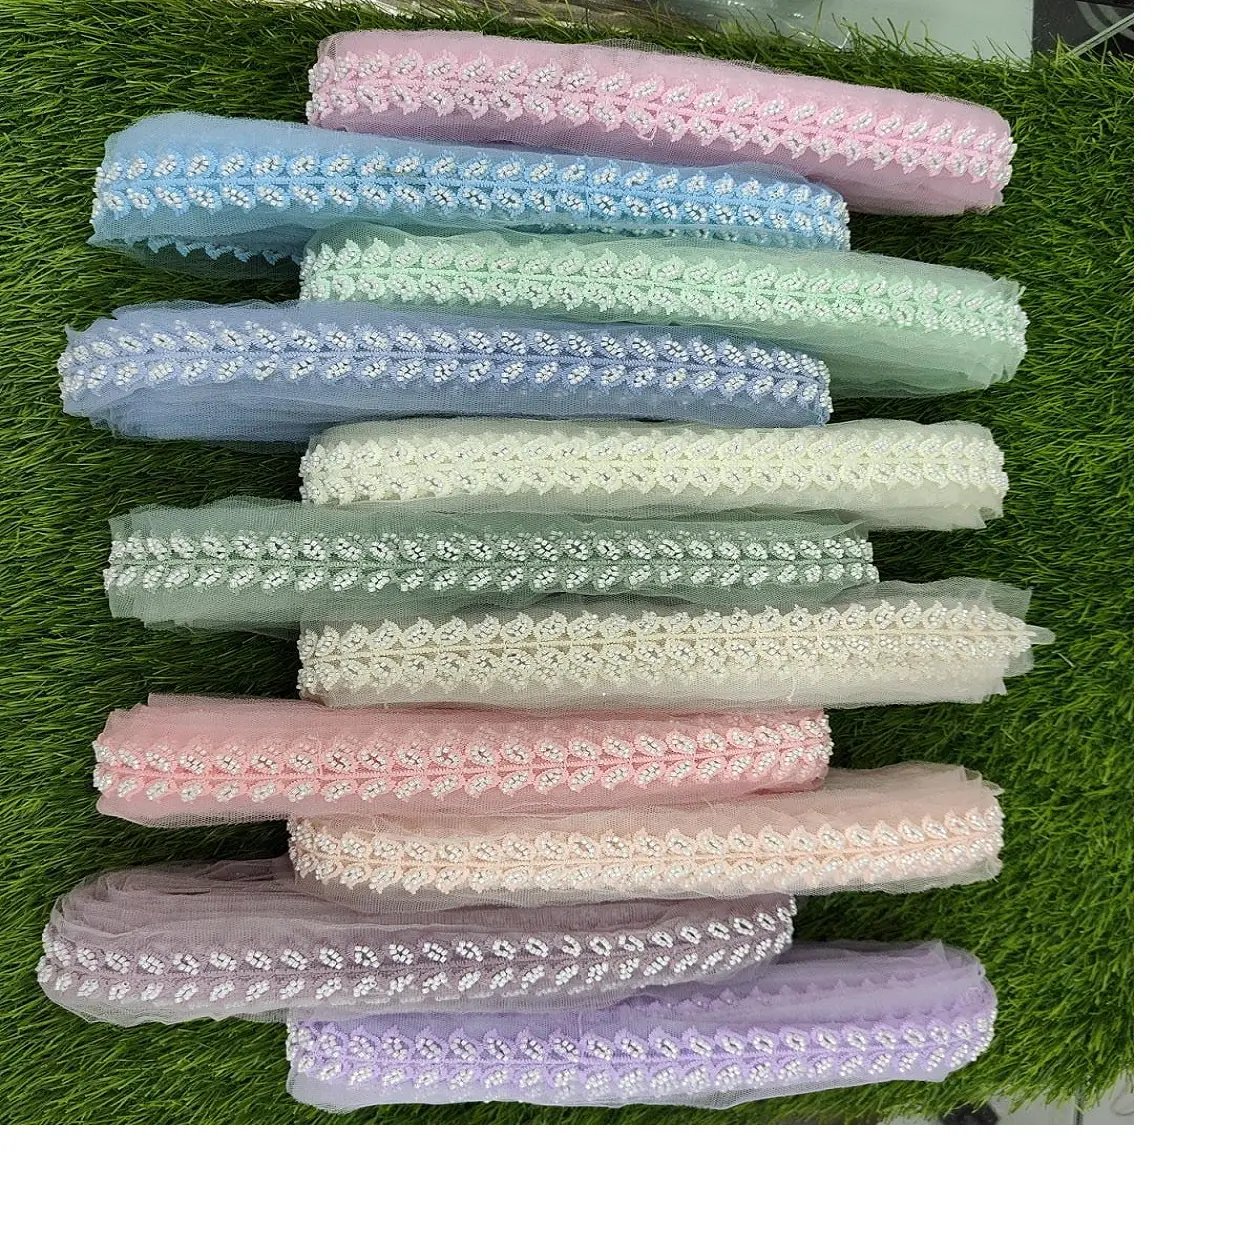 Tùy chỉnh được thực hiện trong thiết kế lá thêu ren làm việc bằng đá với nhiều tùy chọn màu trên vải lưới với nhiều màu trong 1 inch